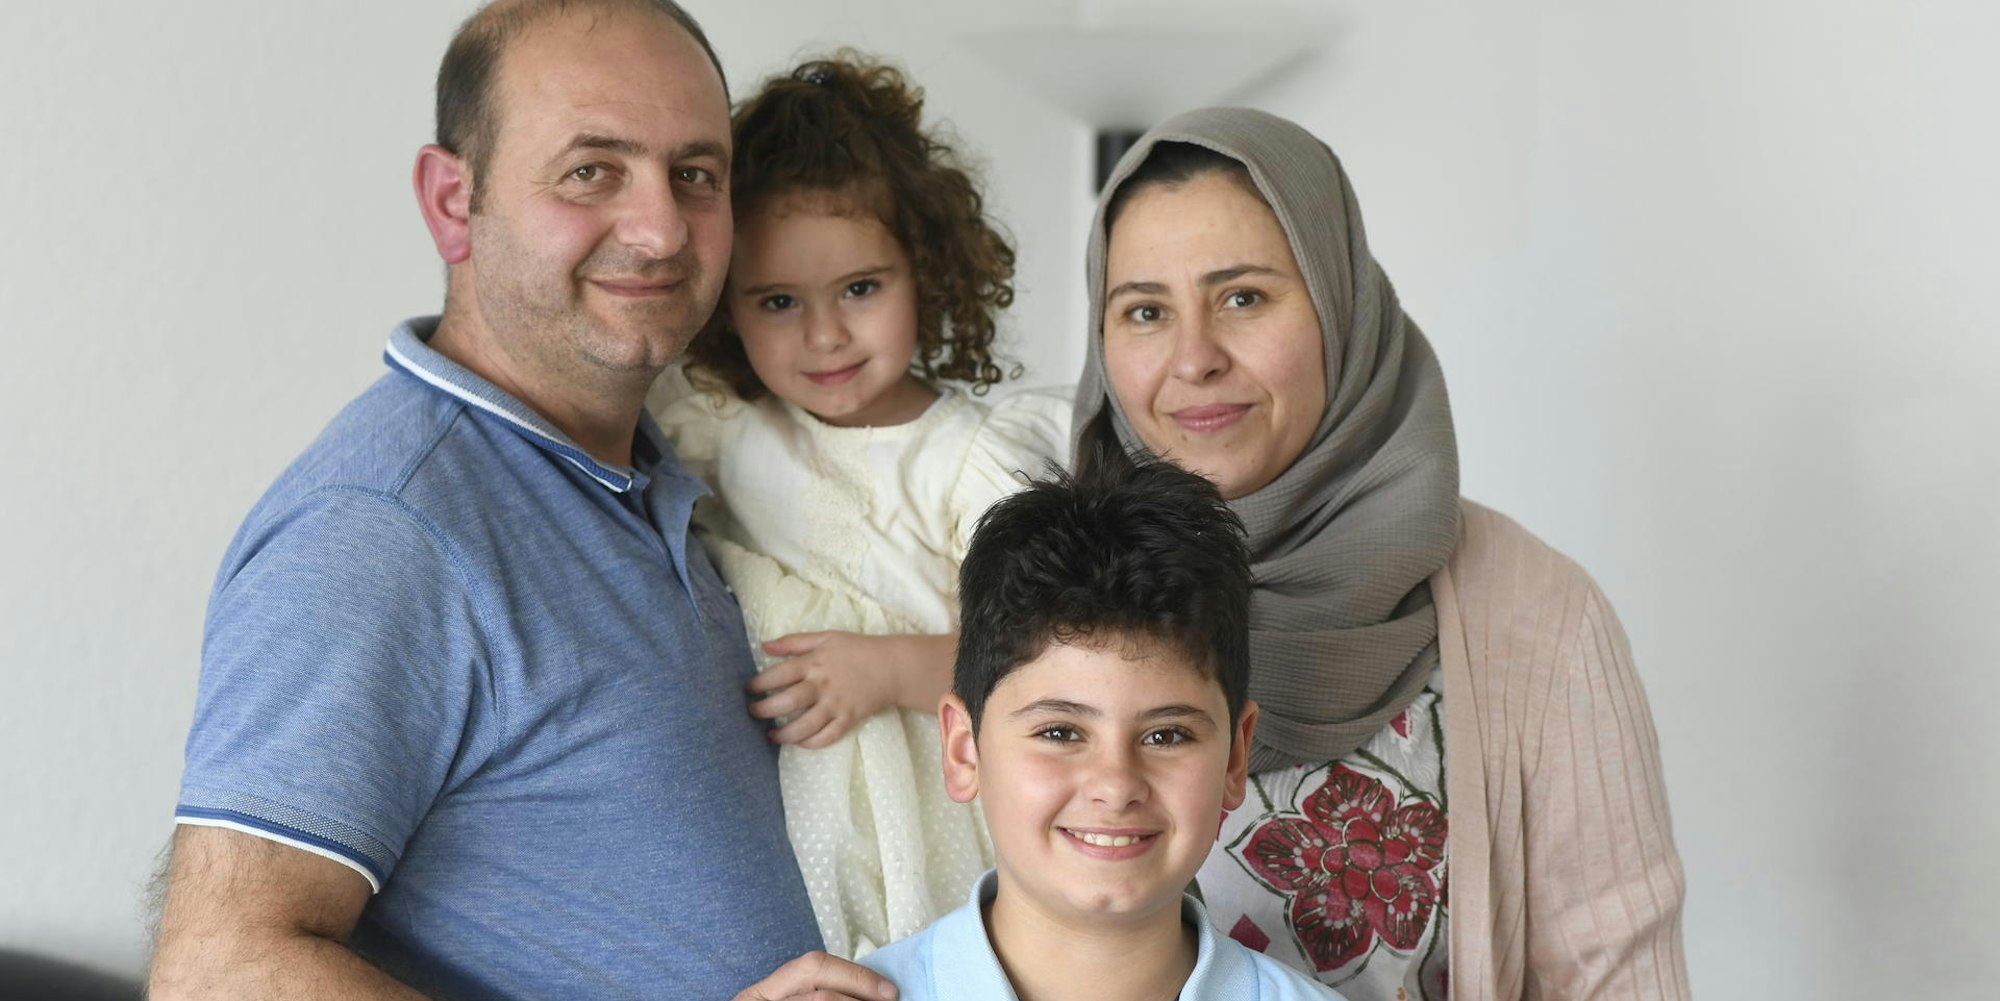 Planen ihre Zukunft in Deutschland: Walid Kazmouz (l.), seine Frau Rajaa Aldarwis und die Kinder Celine und Zafir.